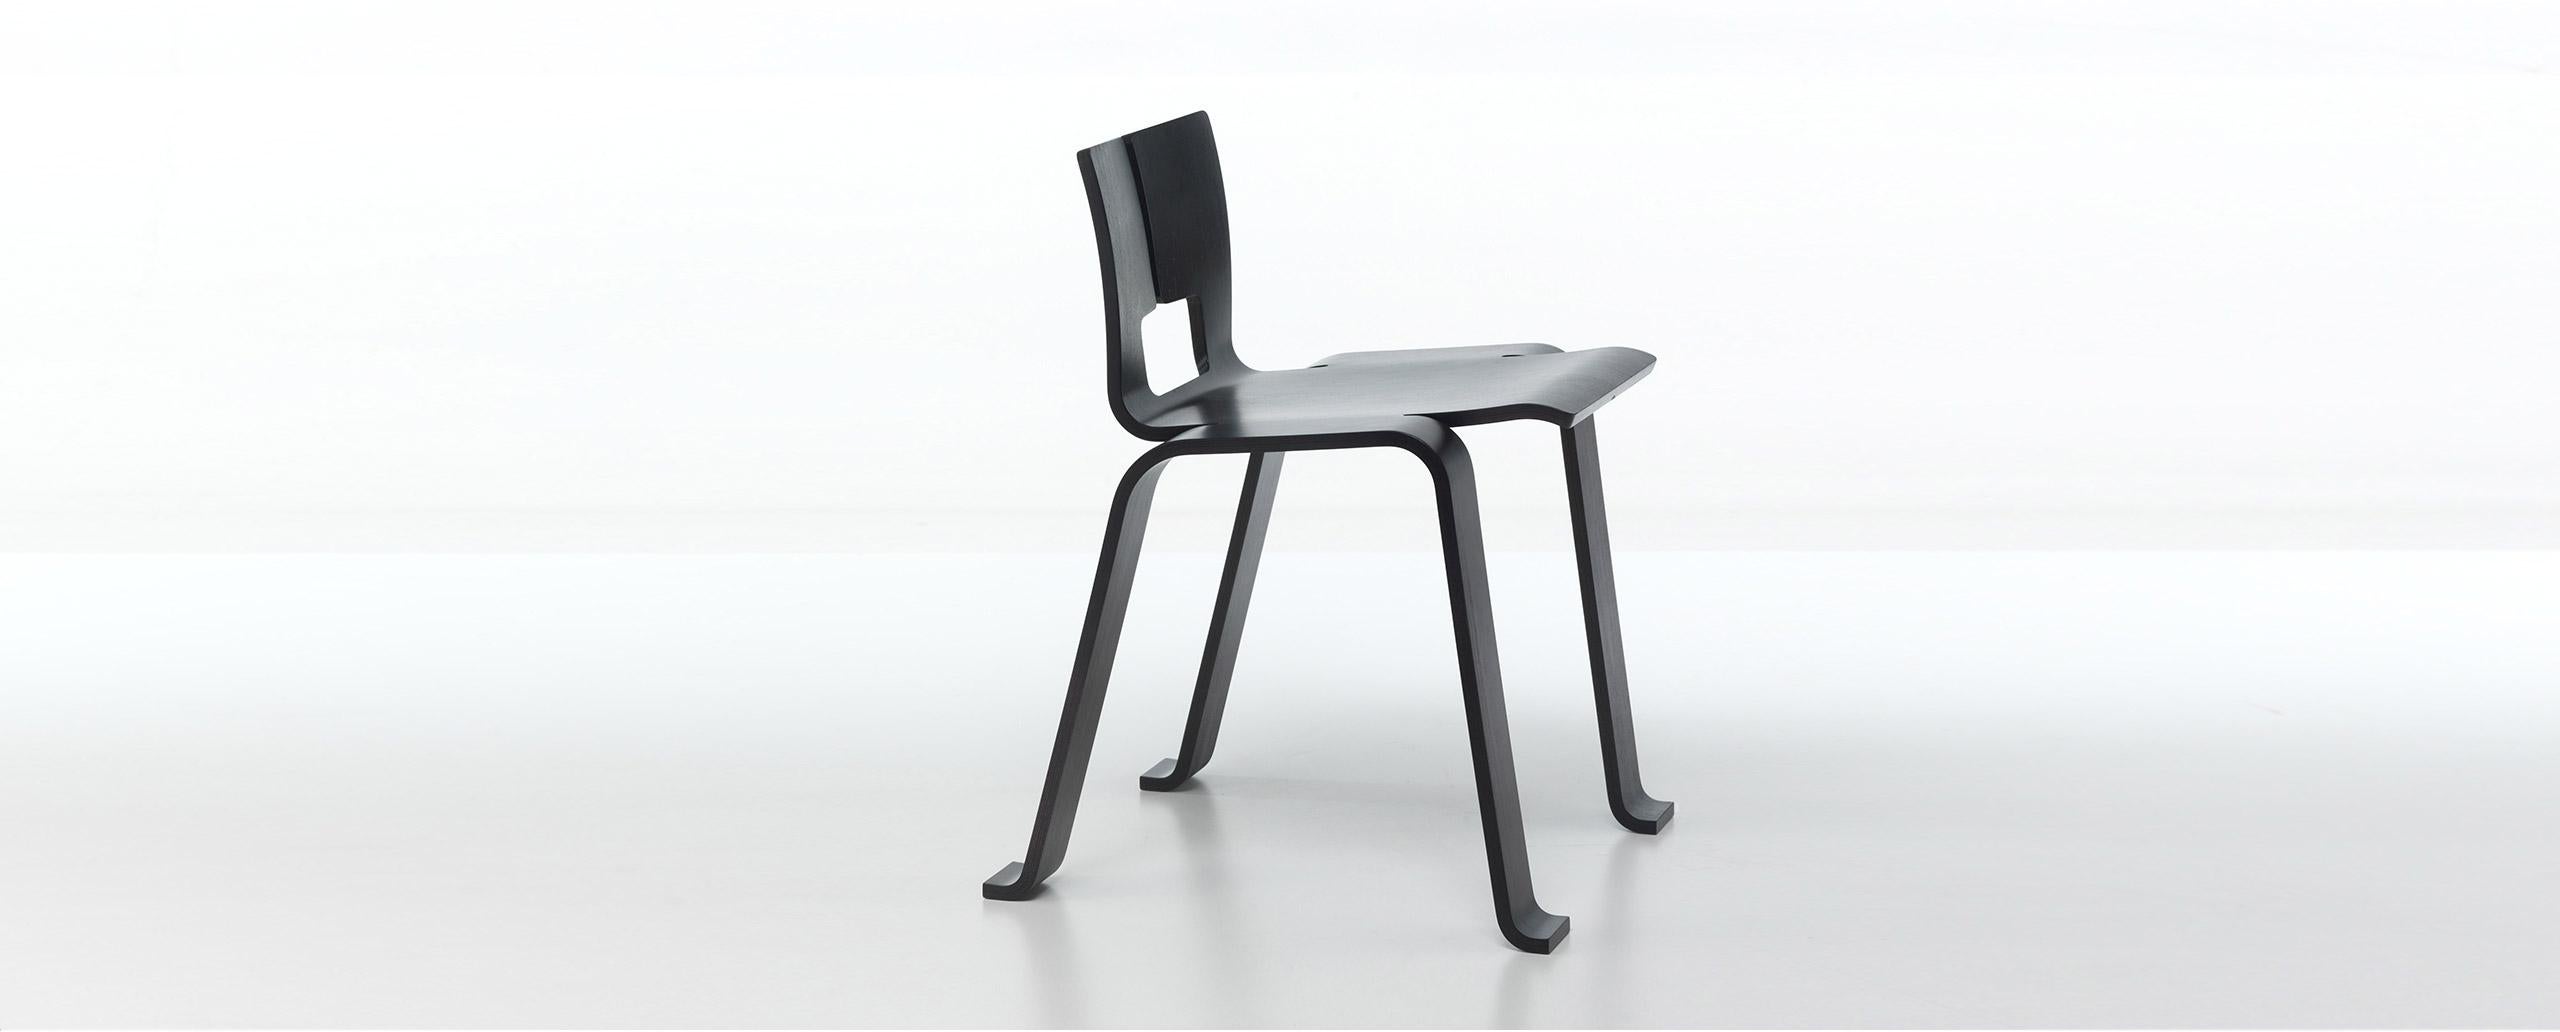 Stuhl, entworfen von Charlotte Perriand im Jahr 1954. Neuauflage durch Cassina im Jahr 2009.
Hergestellt von Cassina in Italien.

Mit dem Stuhl Ombra Tokyo schuf Charlotte Perriand ein ikonisches Stück von großer visueller Anziehungskraft und